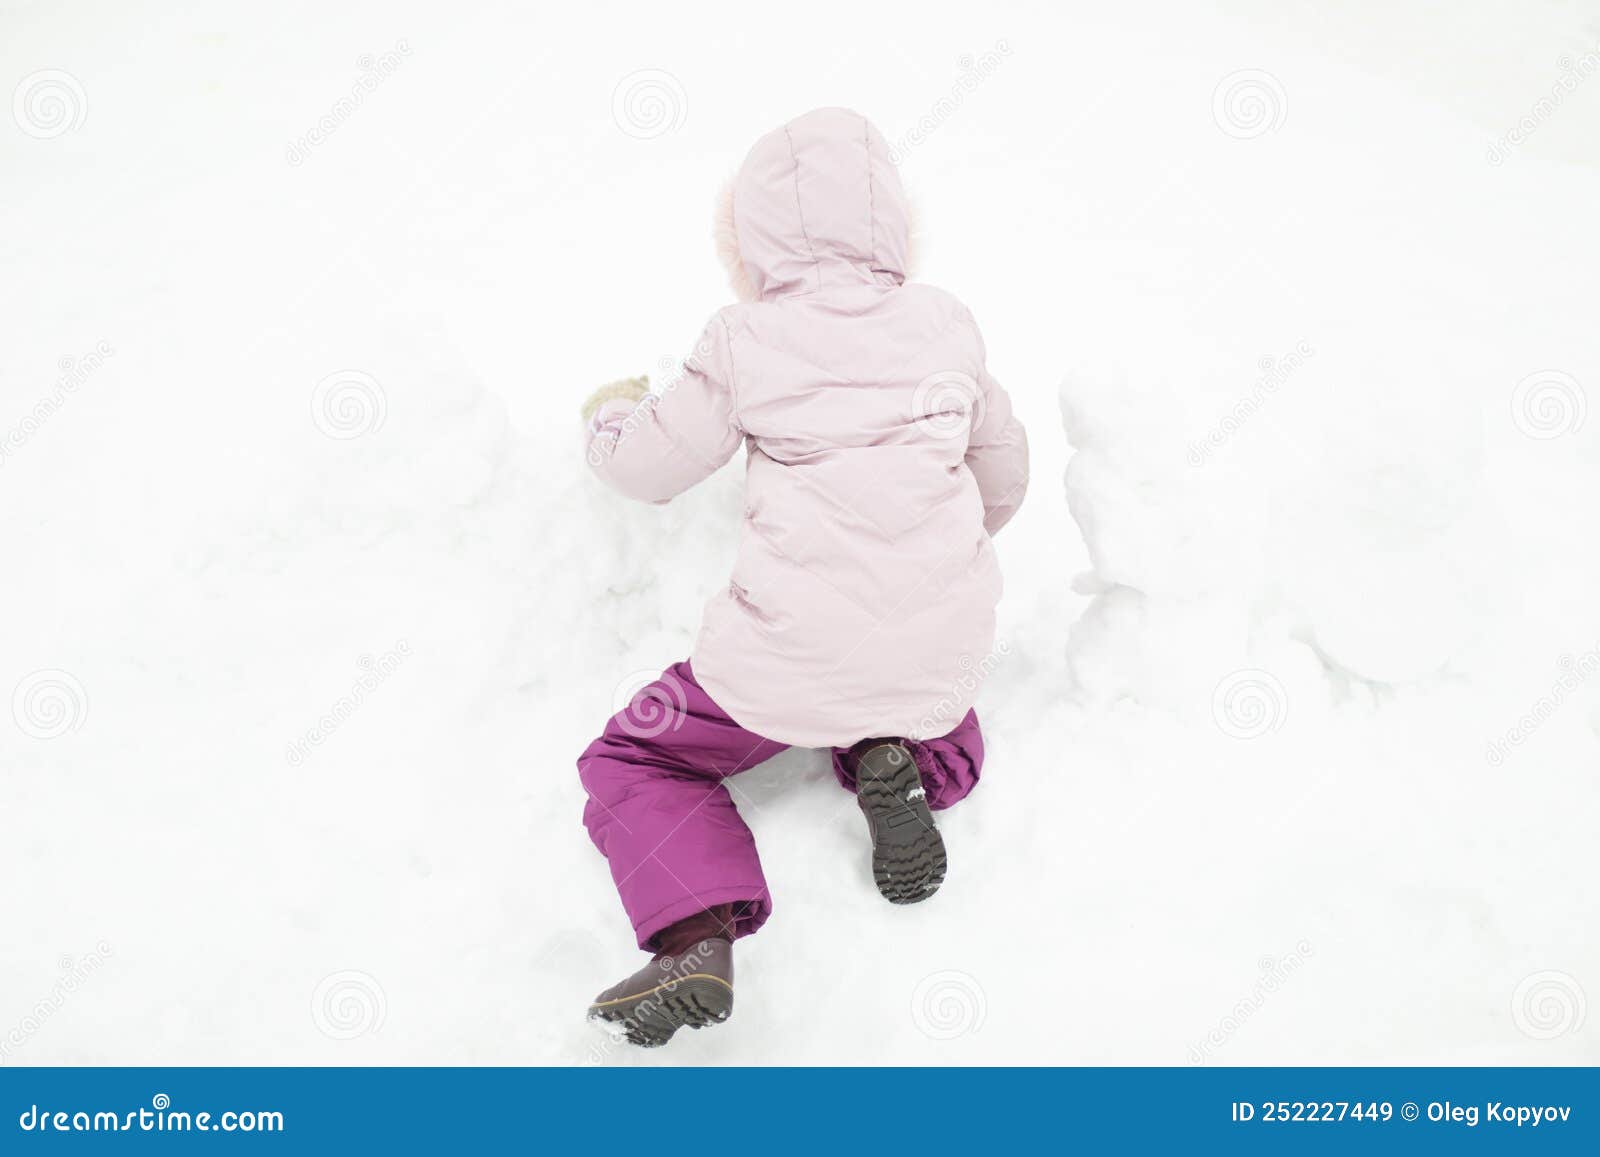 Niños Juega En La Nieve. Niña En Invierno. Ropa Abrigo Para Niños Imagen de archivo - Imagen de ropa, cabrito: 252227449